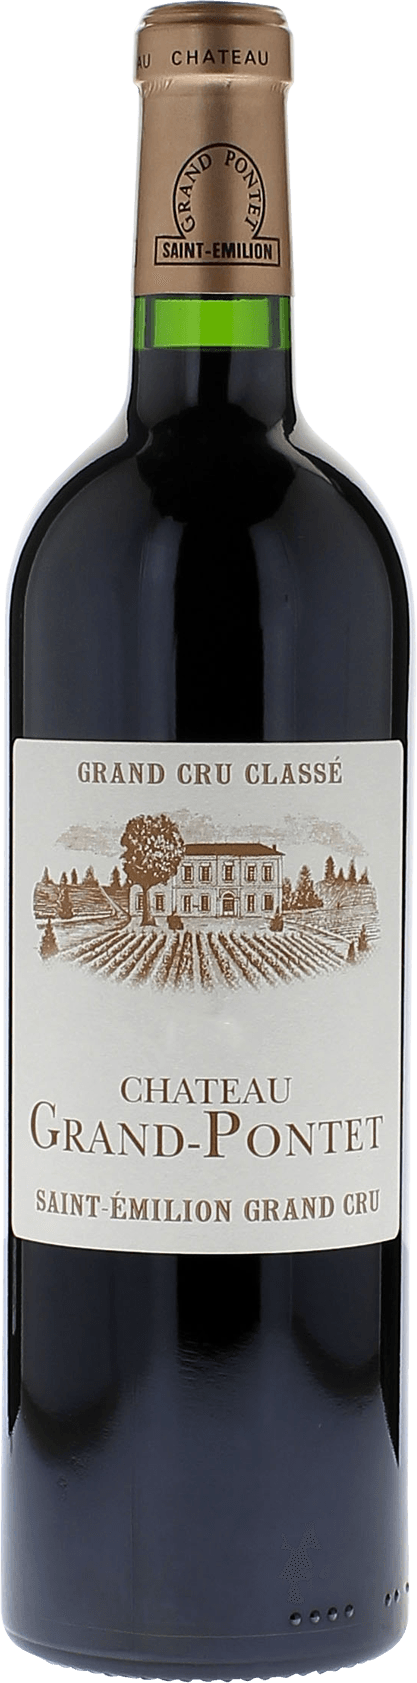 Grand pontet 2019 Grand cru class Saint-Emilion, Bordeaux rouge